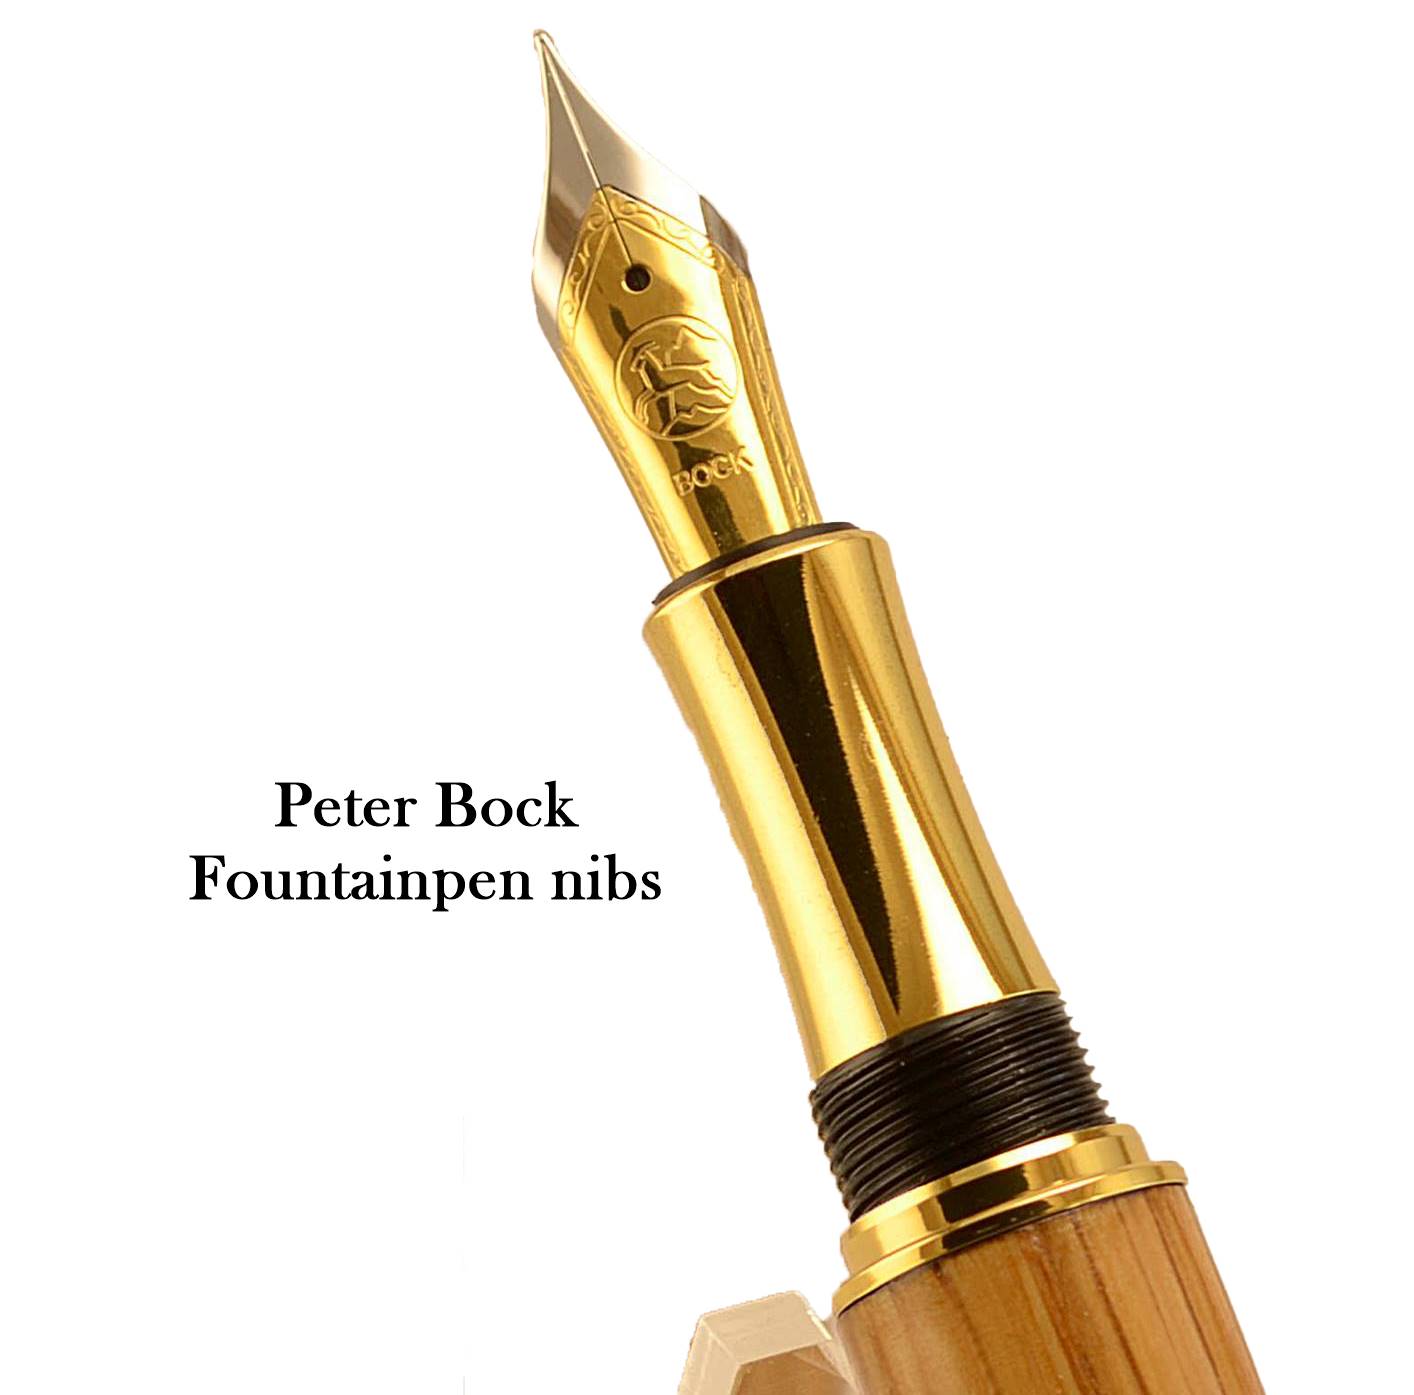 Peter Bock Fountain Pen Nib in an Irish Pens handmade fountain pen